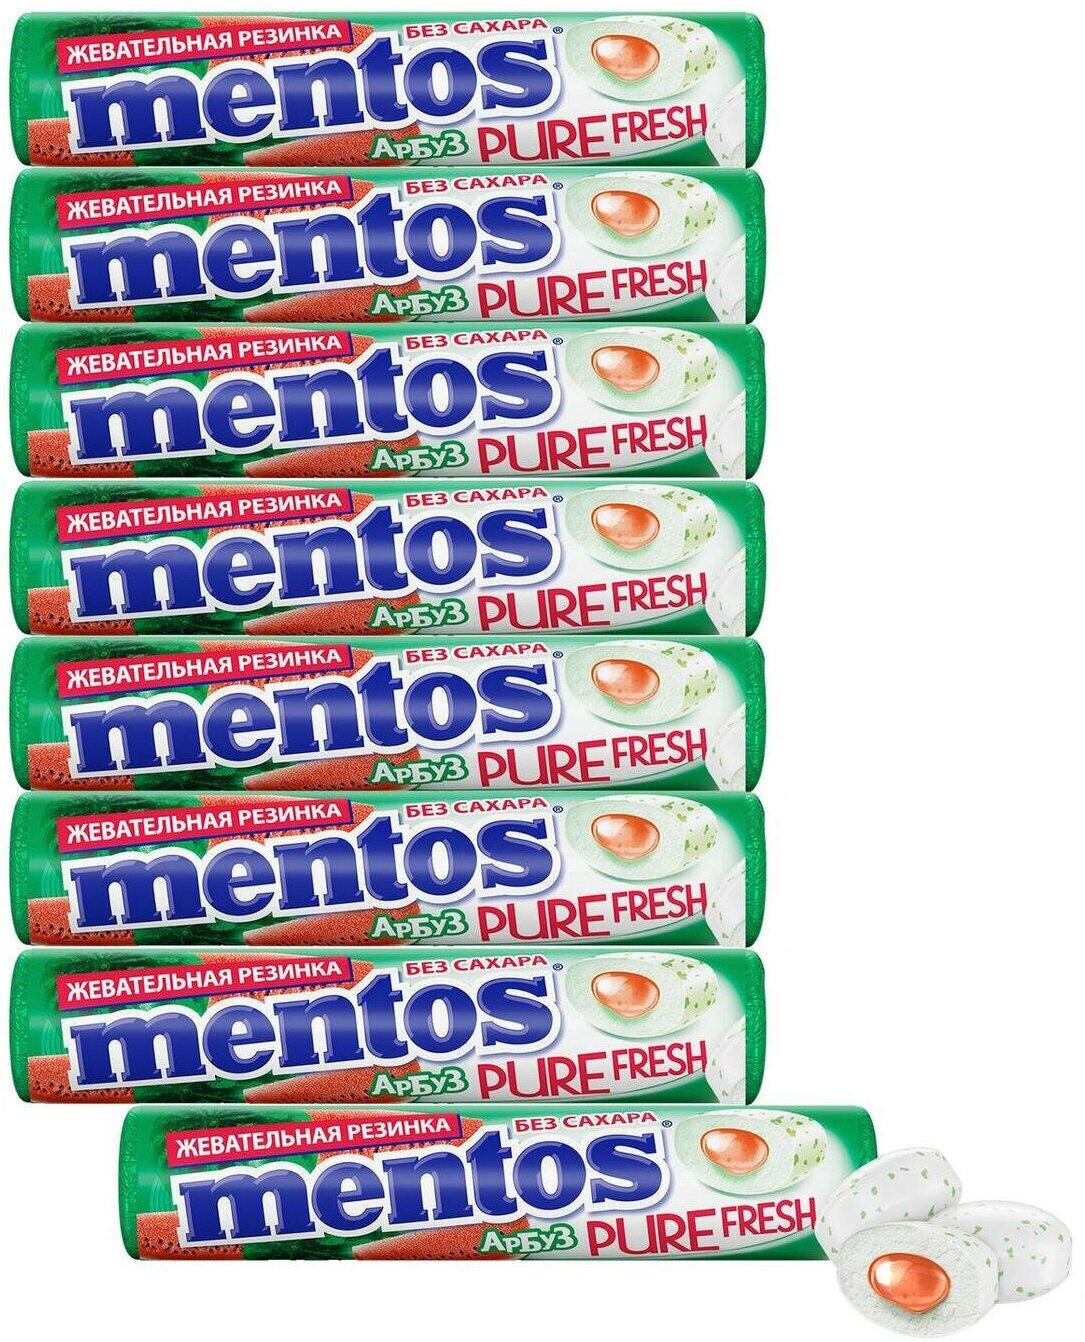 Жевательная резинка Mentos Pure Fresh вкус Арбуз, 8 шт по 15,5 г